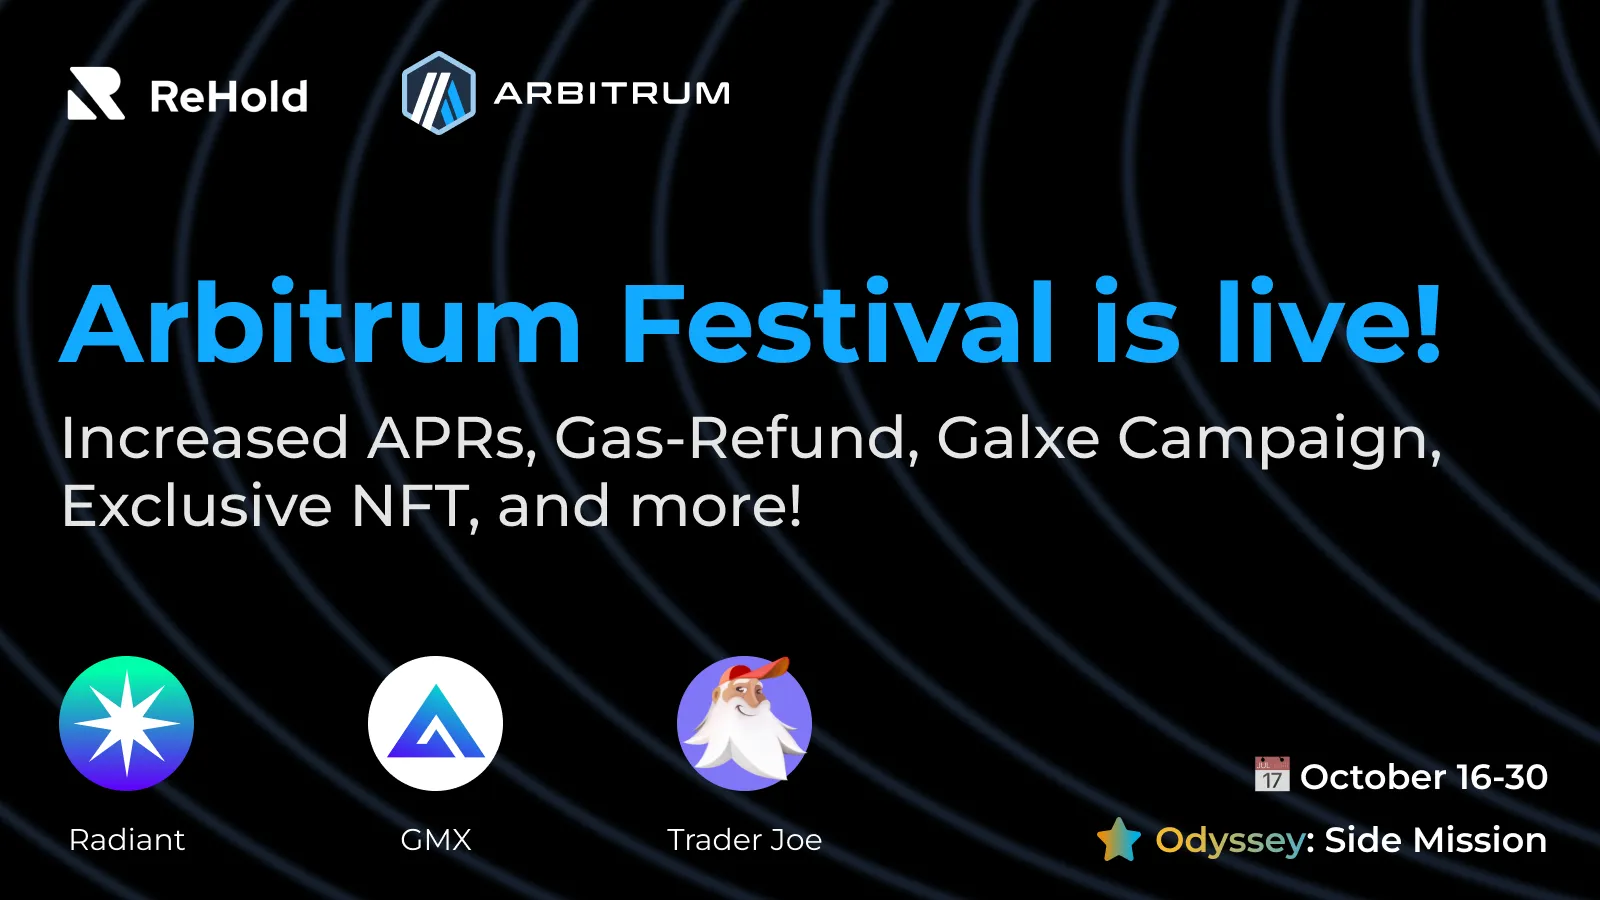 Arbitrum Festival is Live